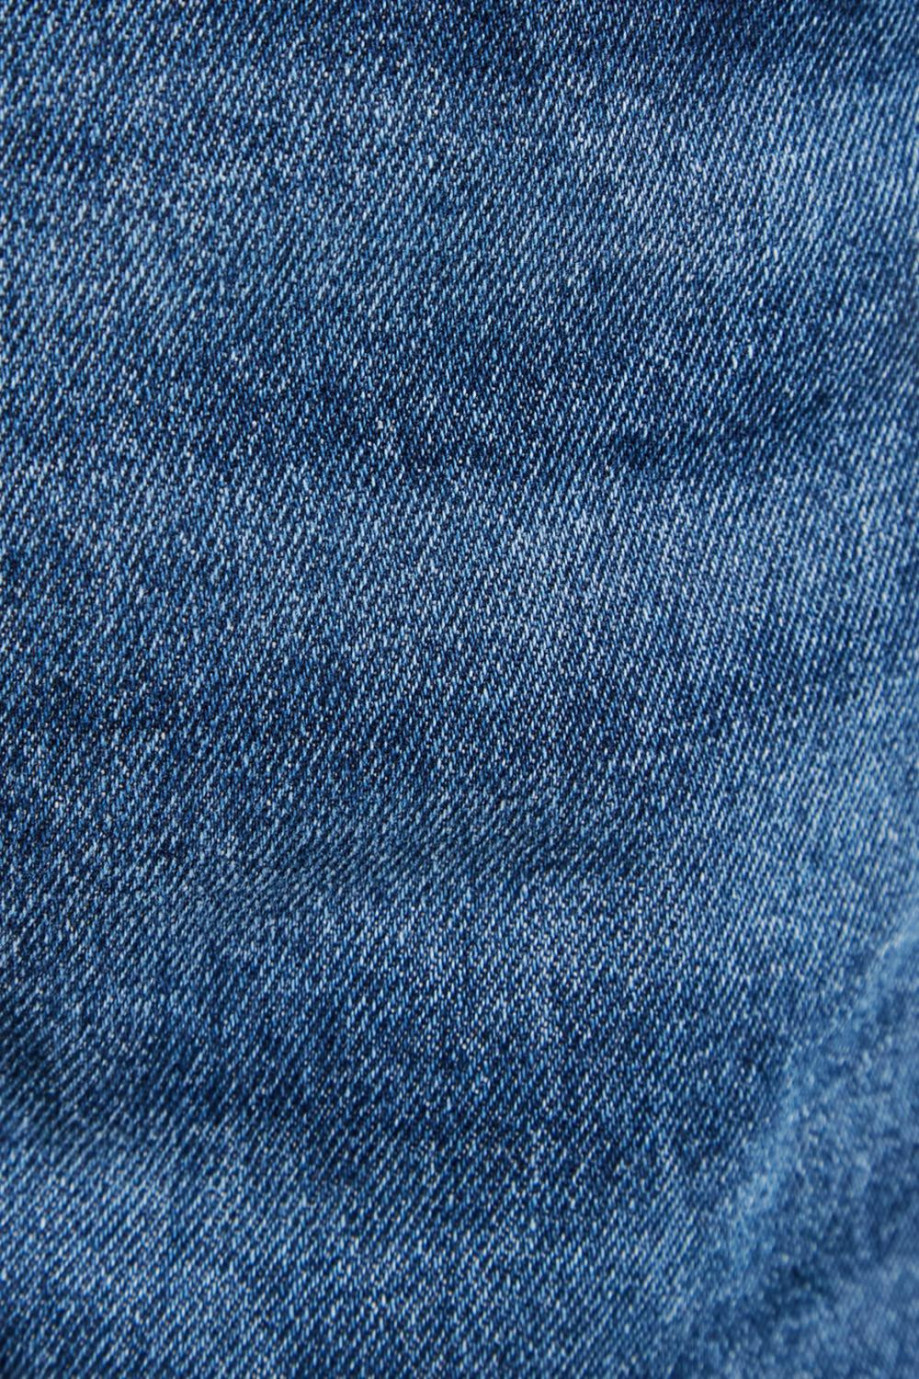 Jean 90´S azul oscuro con bolsillos, tiro alto y bota recta ancha